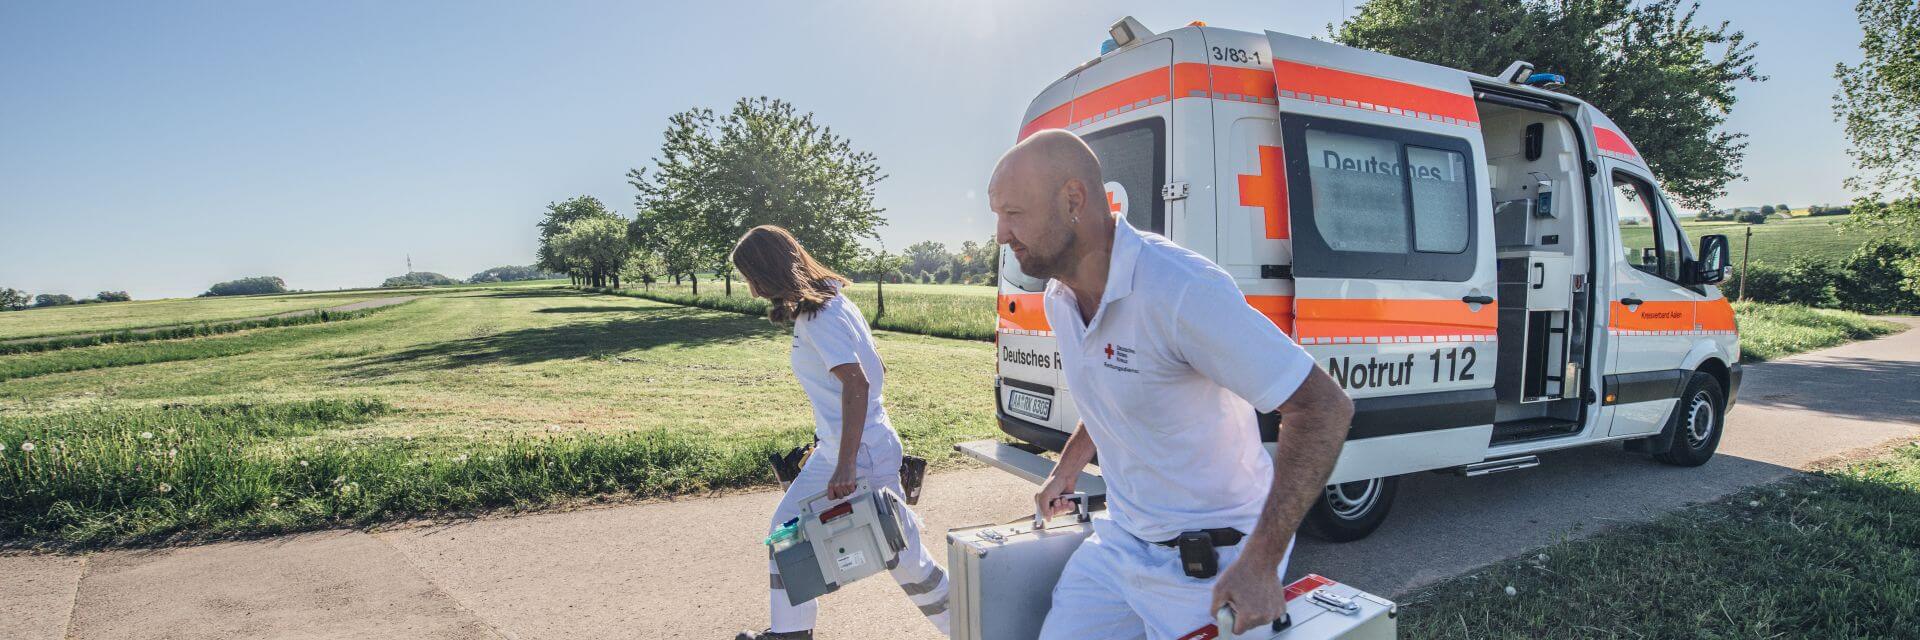 Aschaffenburg: Mann klaut Krankenwagen mit Patientin und flieht - FOCUS  online